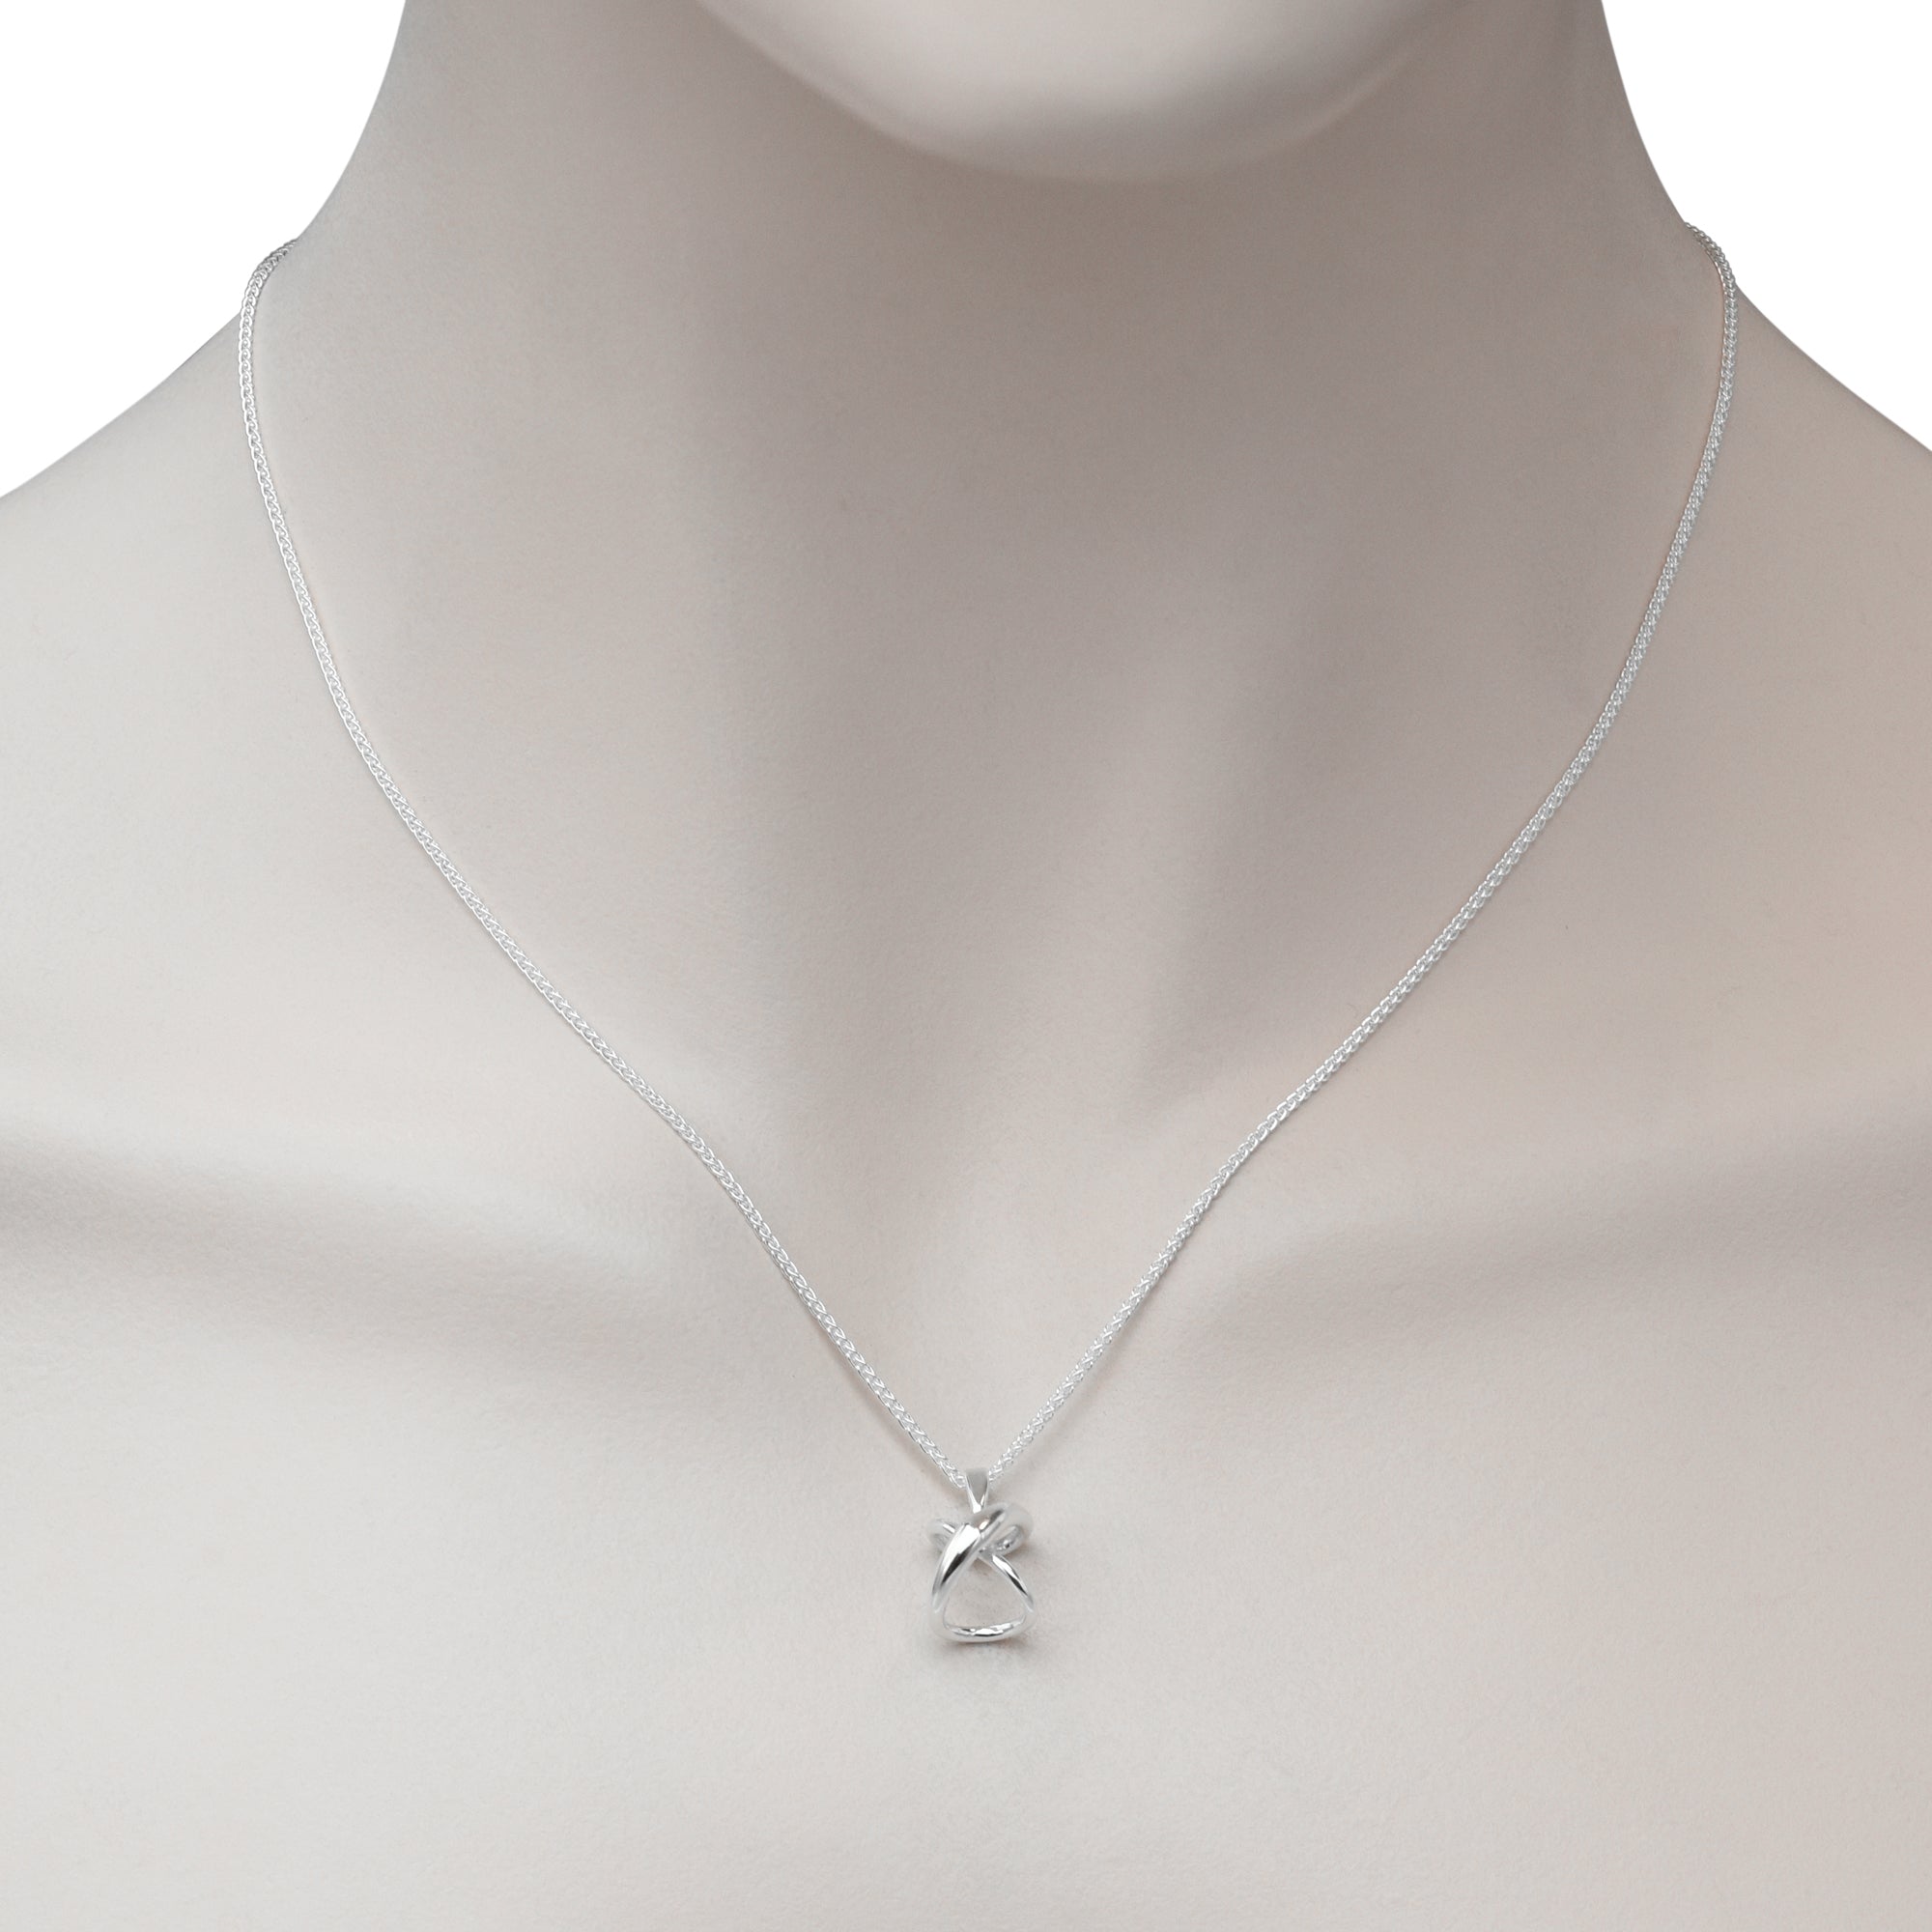 E.L. Designs Secret Heart Necklace in Sterling Silver